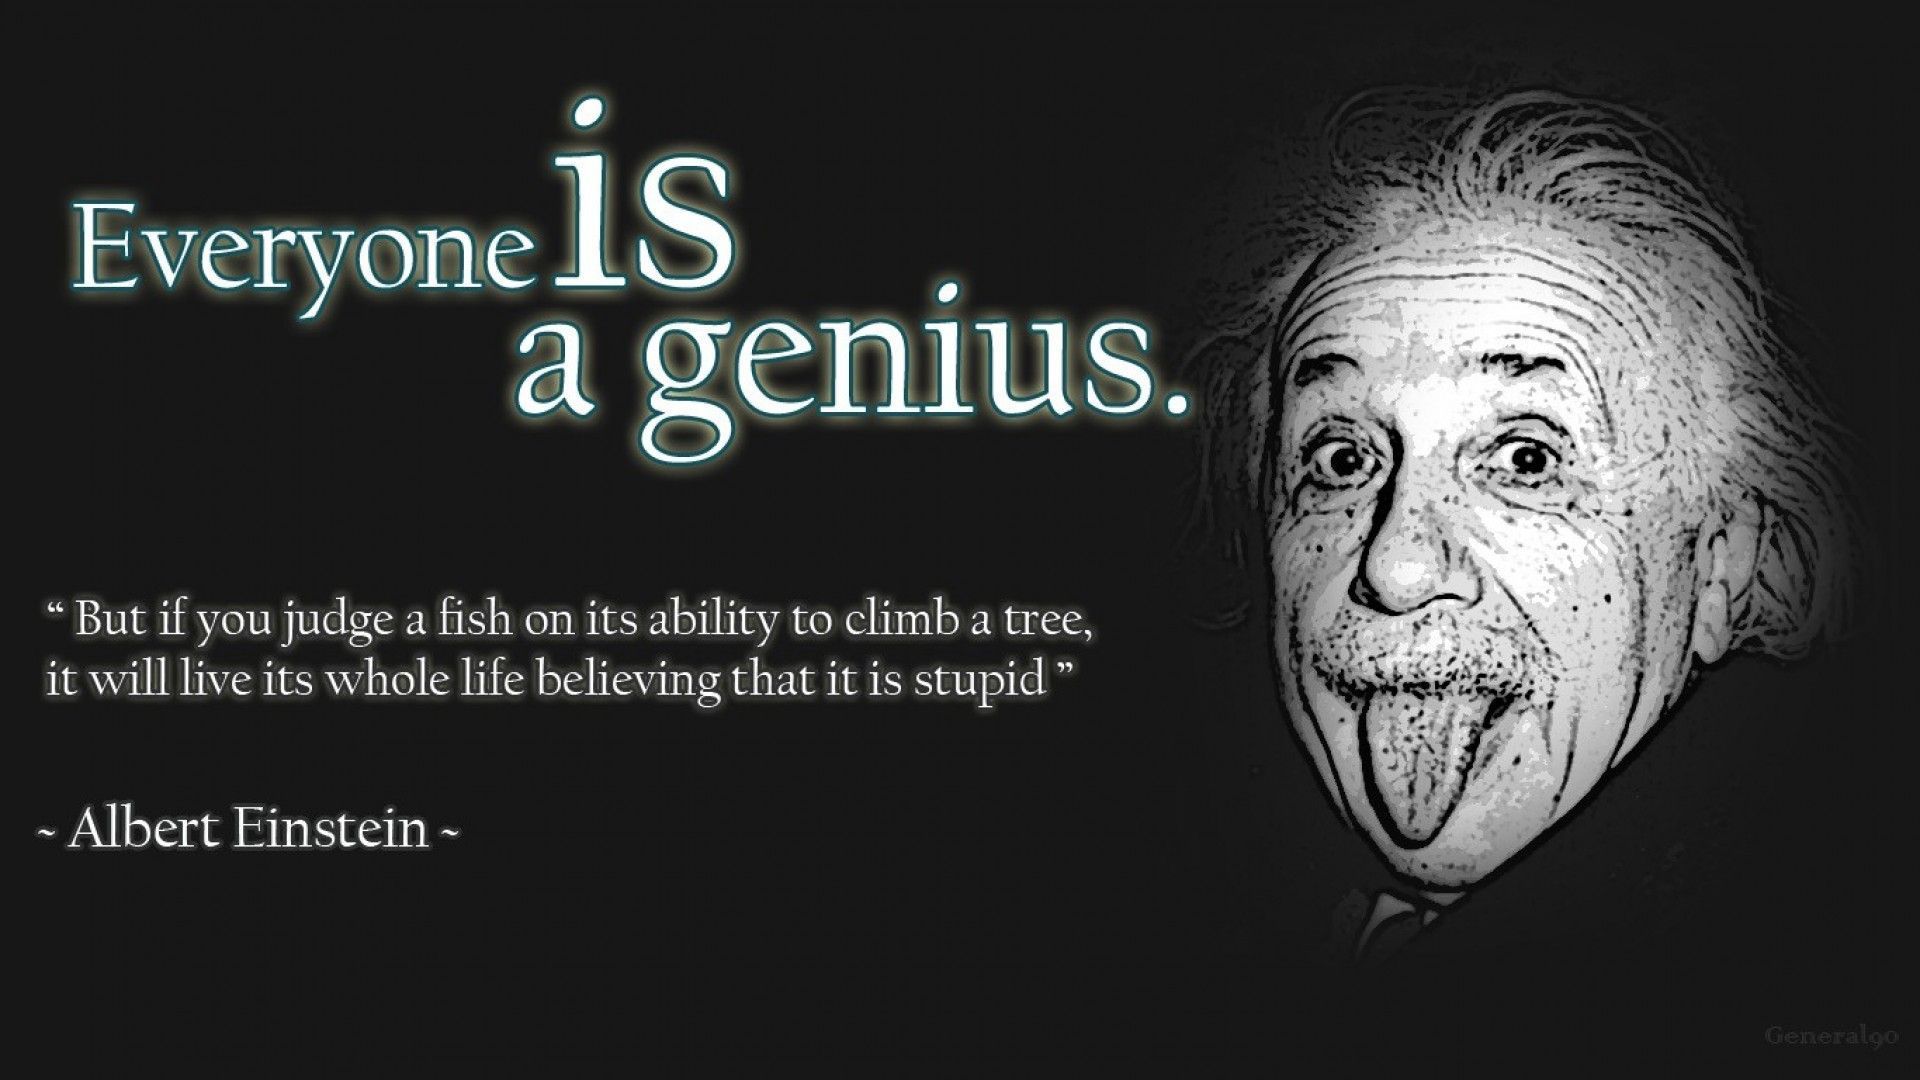 1920x1080 Albert Einstein Wallpaper. Albert einstein quotes education, Albert einstein quotes, Einstein quotes education on WallpaperBat